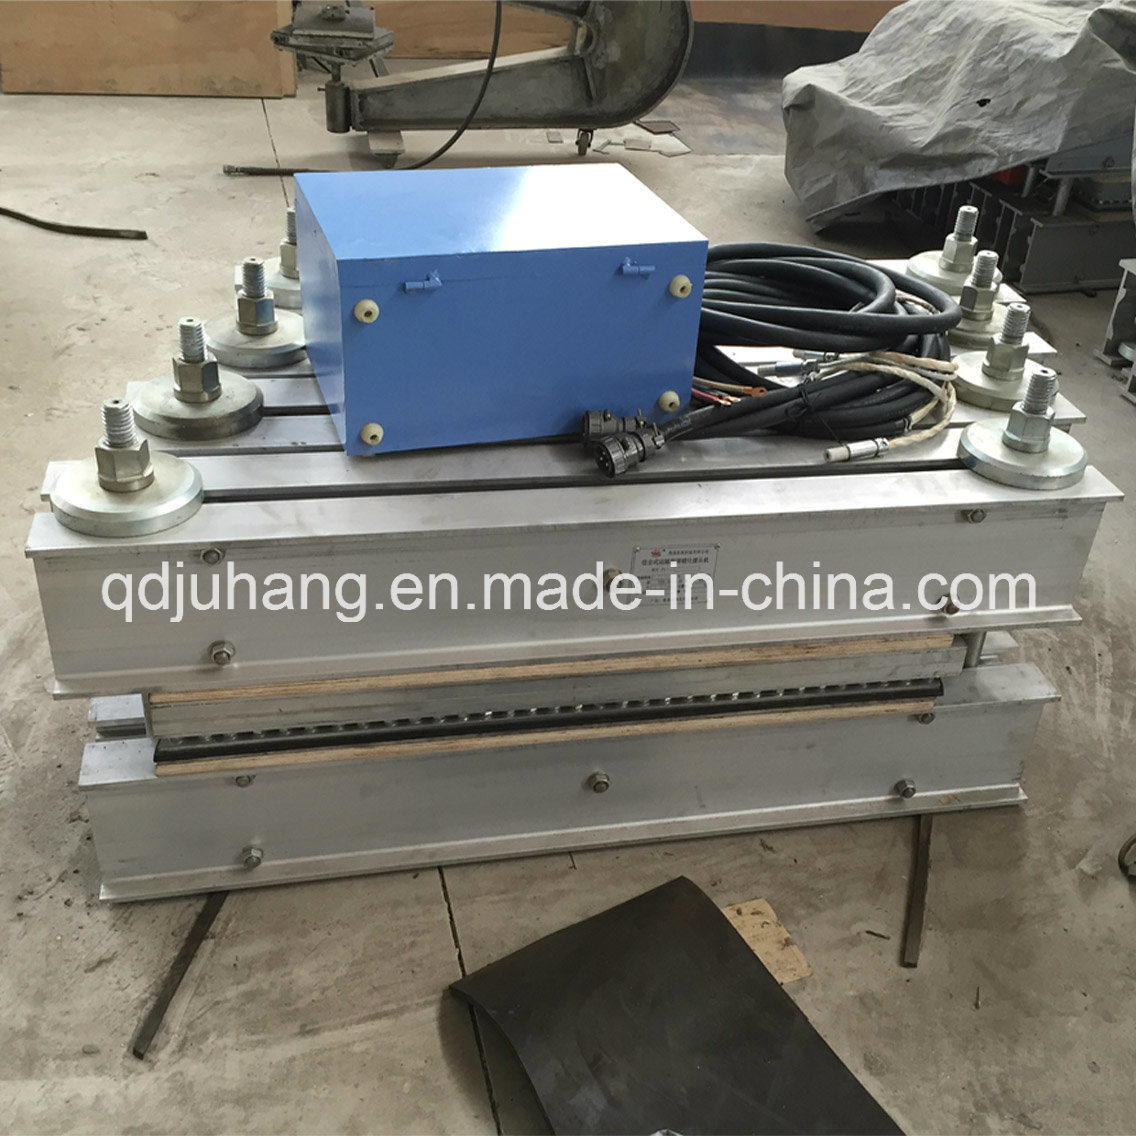 Zlj-1800 Conveyor Belts Joint Vulcanizing Press Supply